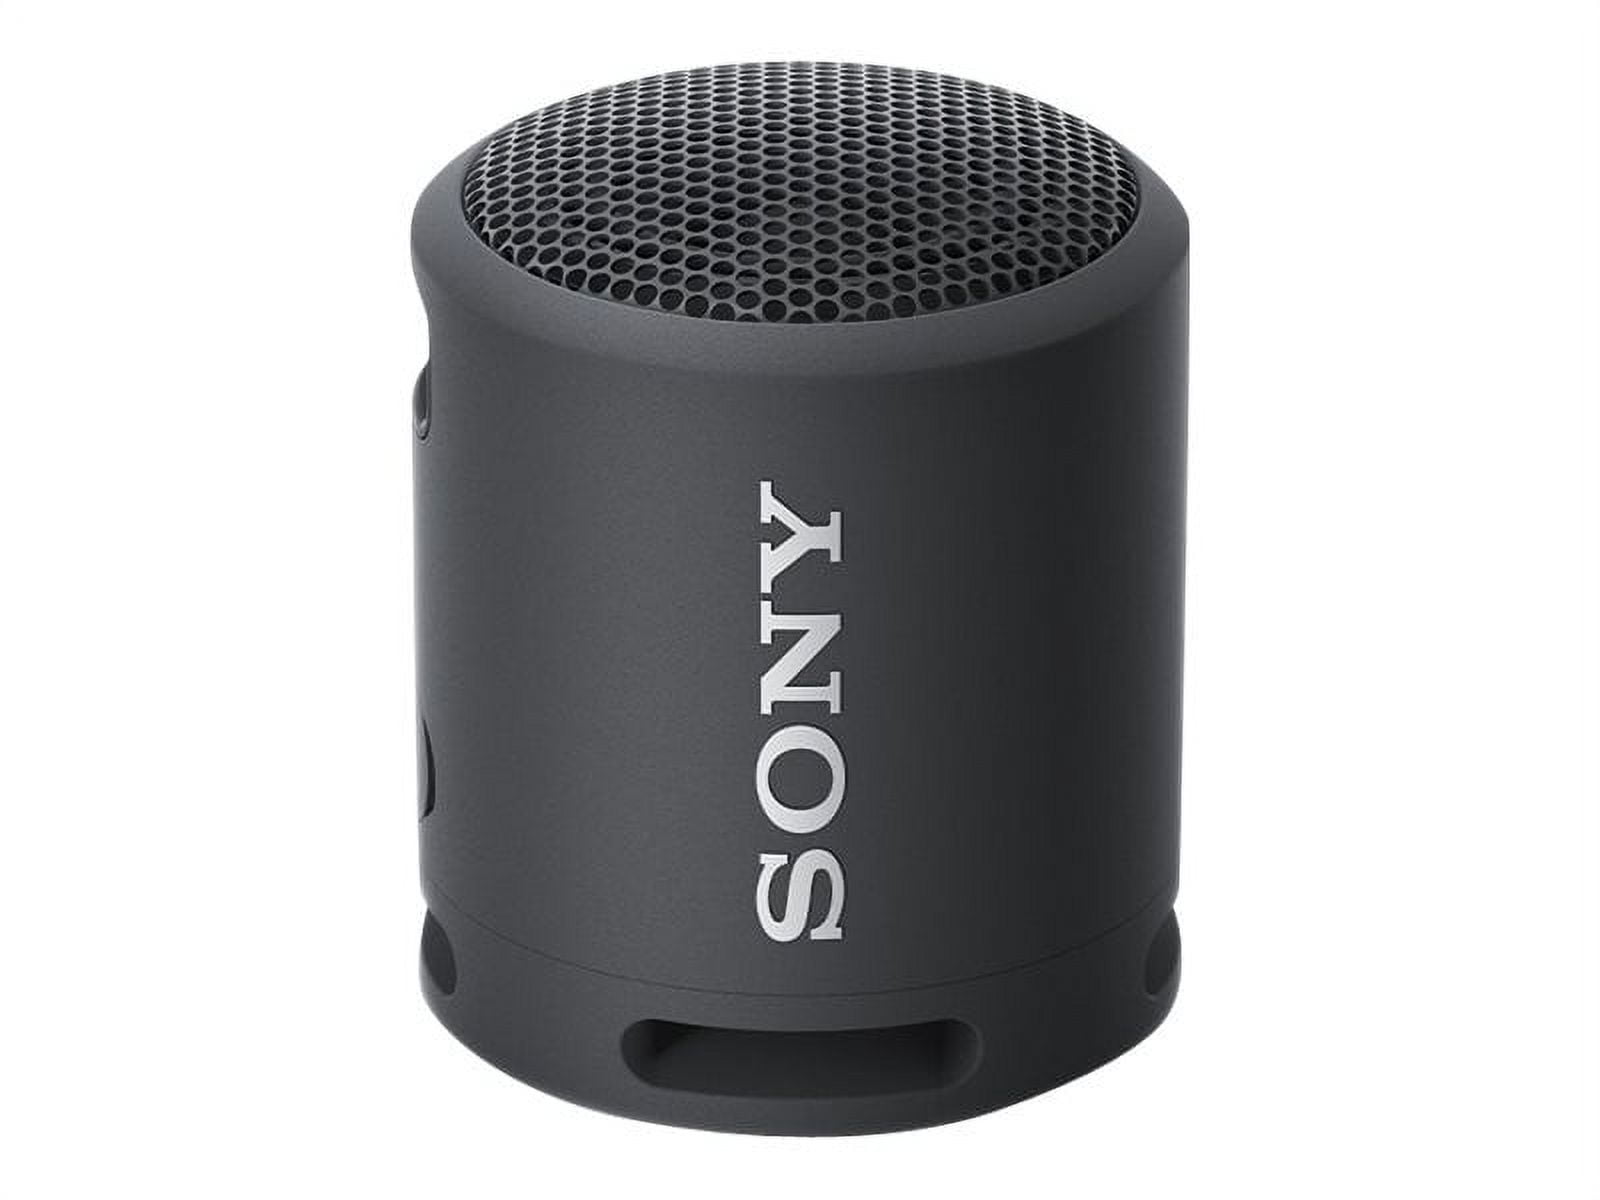 Sony SRS-XB13 Extra BASS Altavoz compacto portátil inalámbrico IP67  impermeable Bluetooth, negro (SRSXB13/B)